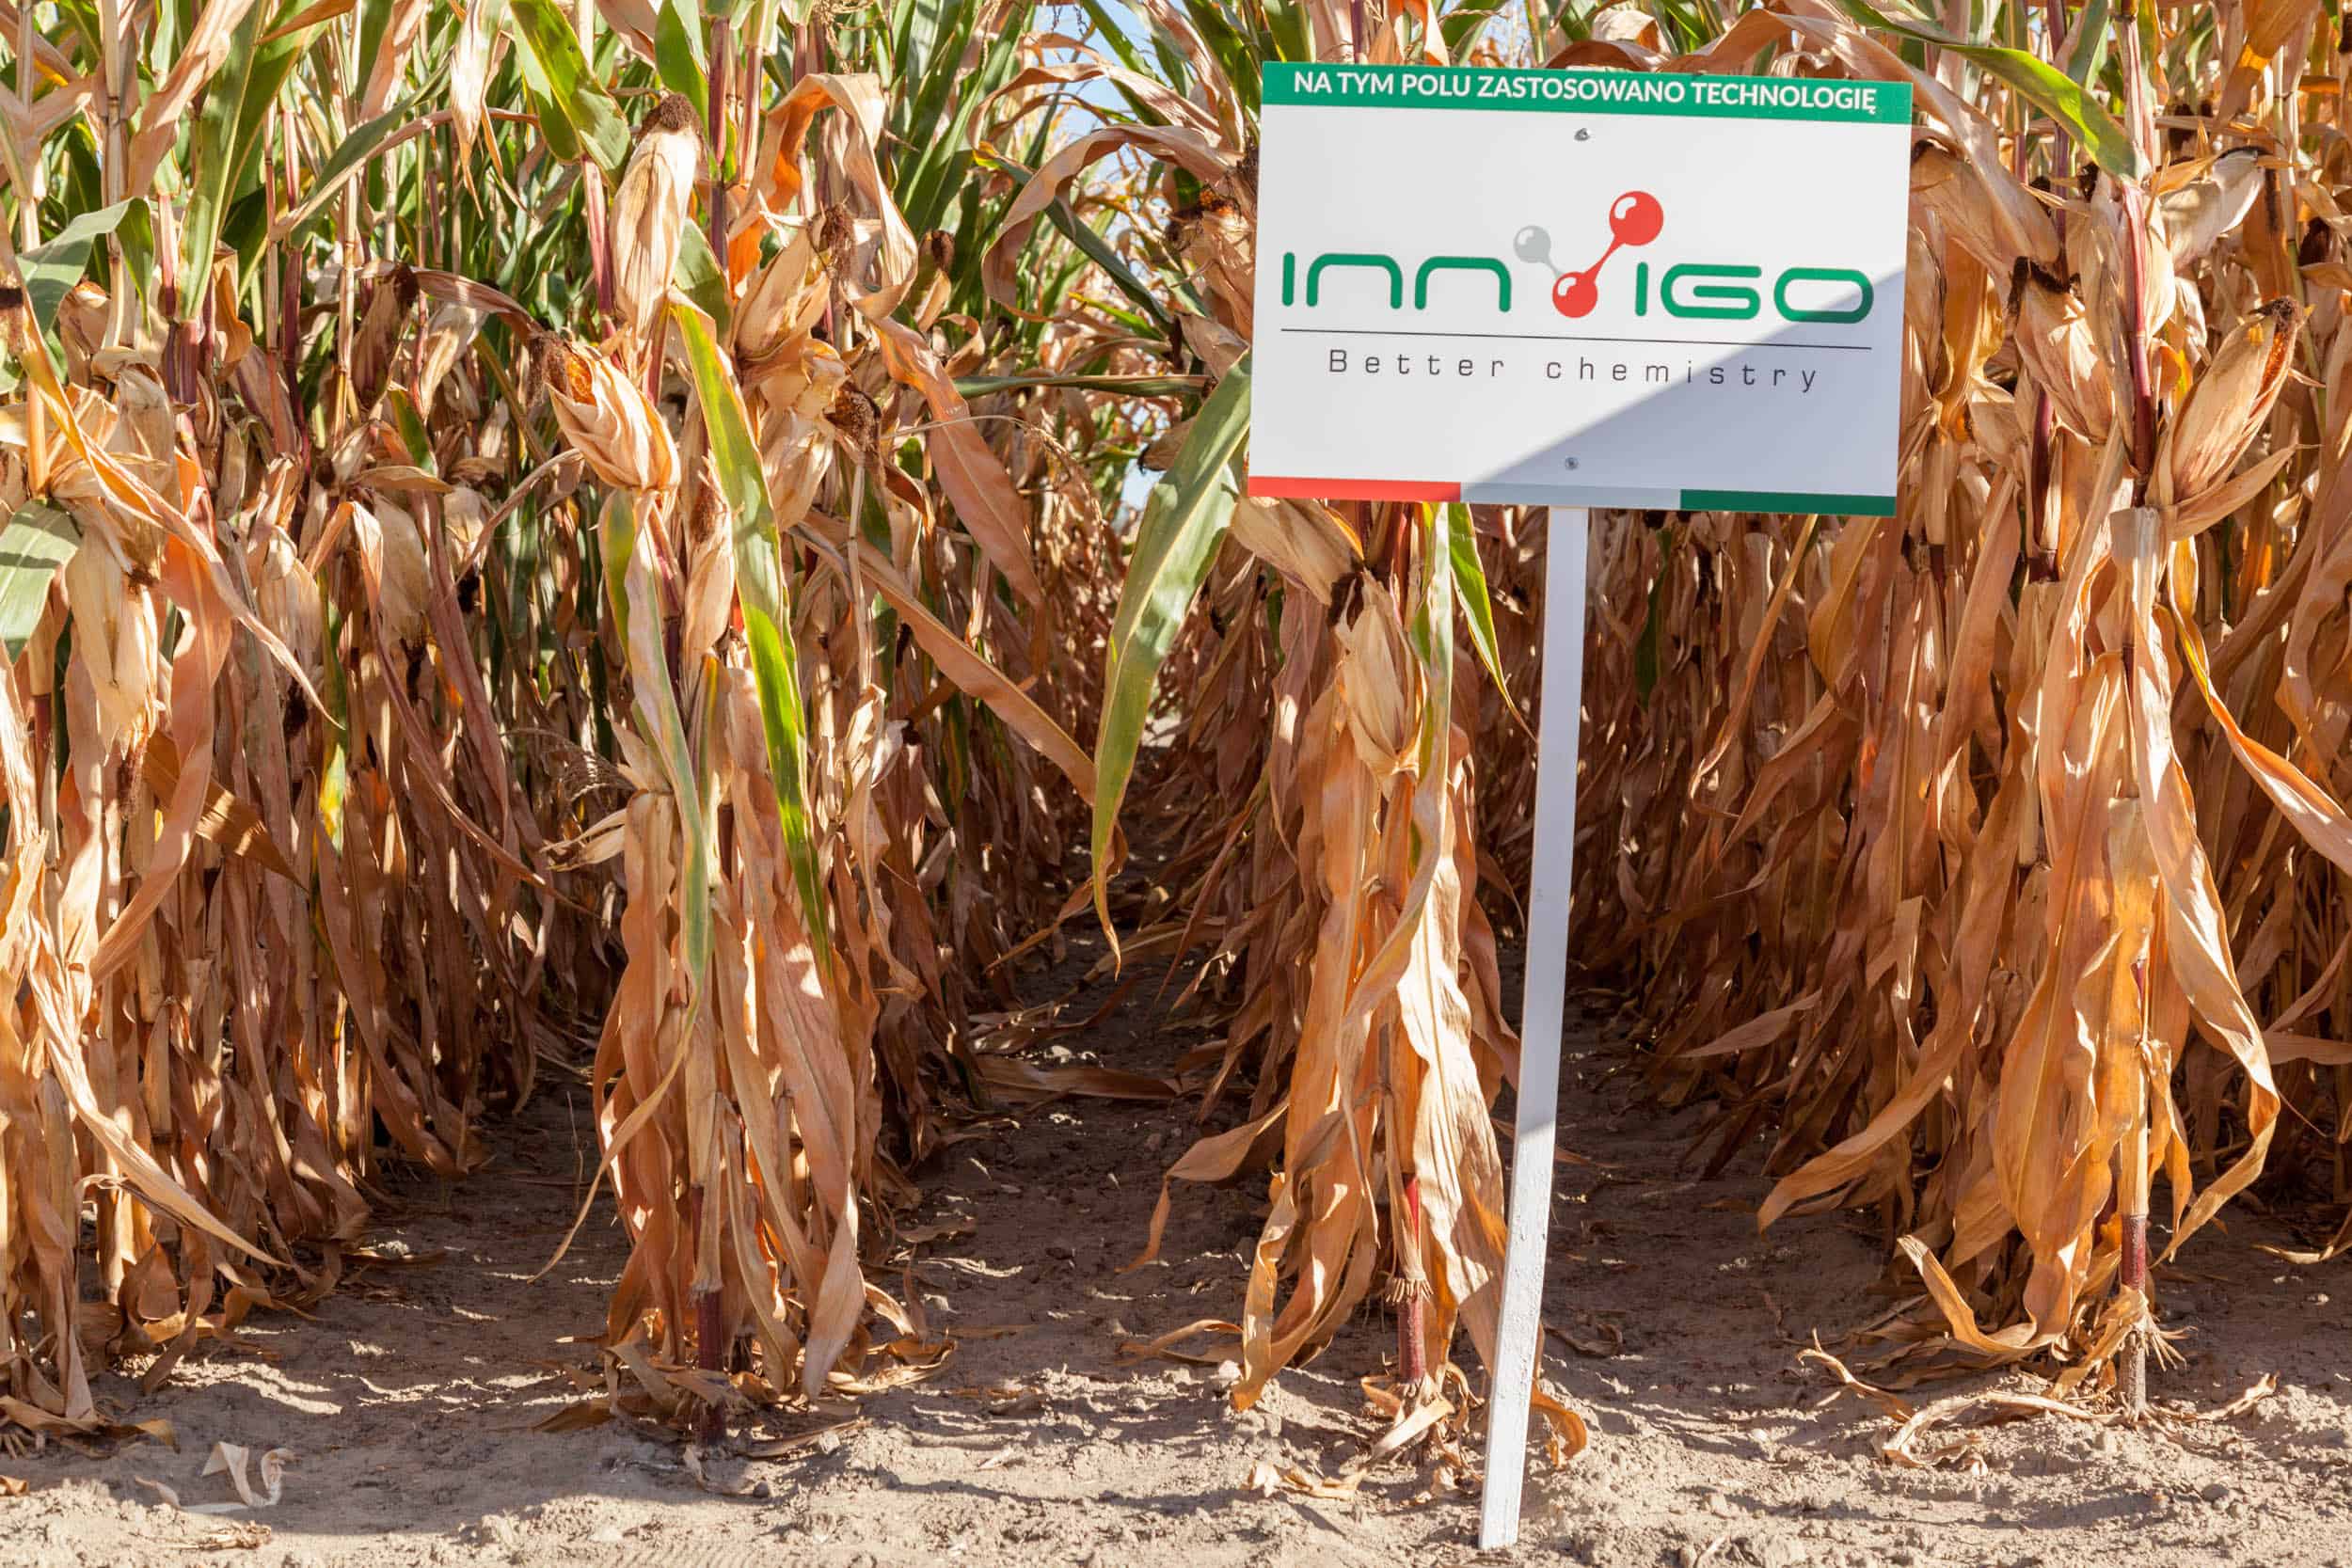 ochrona kukurydzy, opryski - zwalczanie chwastów, herbicydy na kukurydzę Innvigo